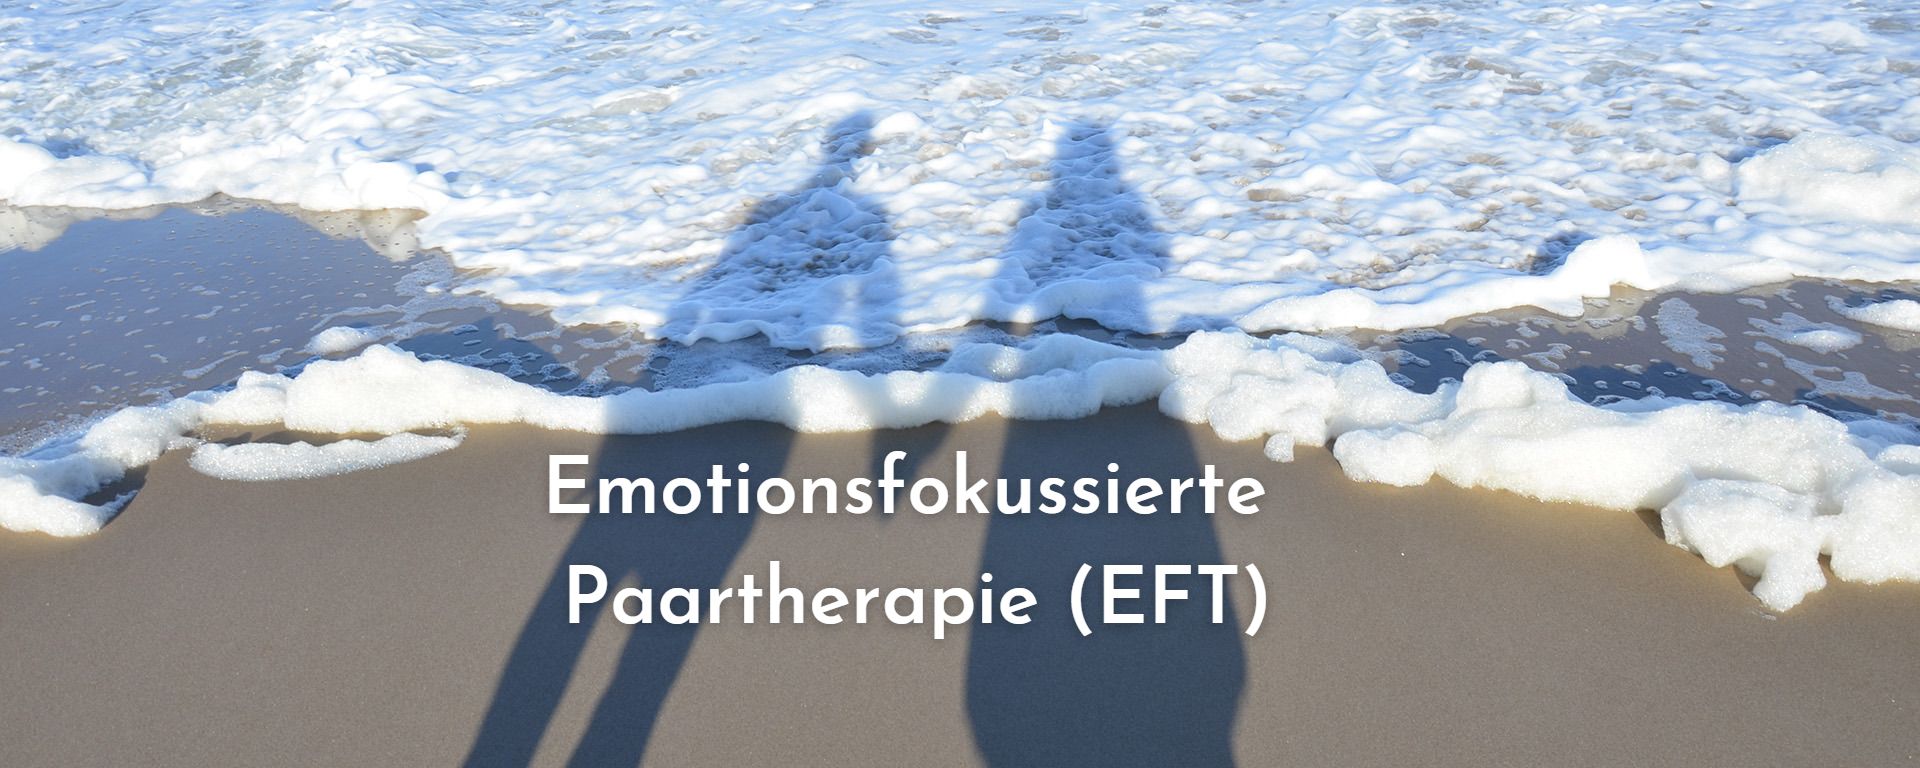 Emotionsfokussierte Paartherapie (EFT)